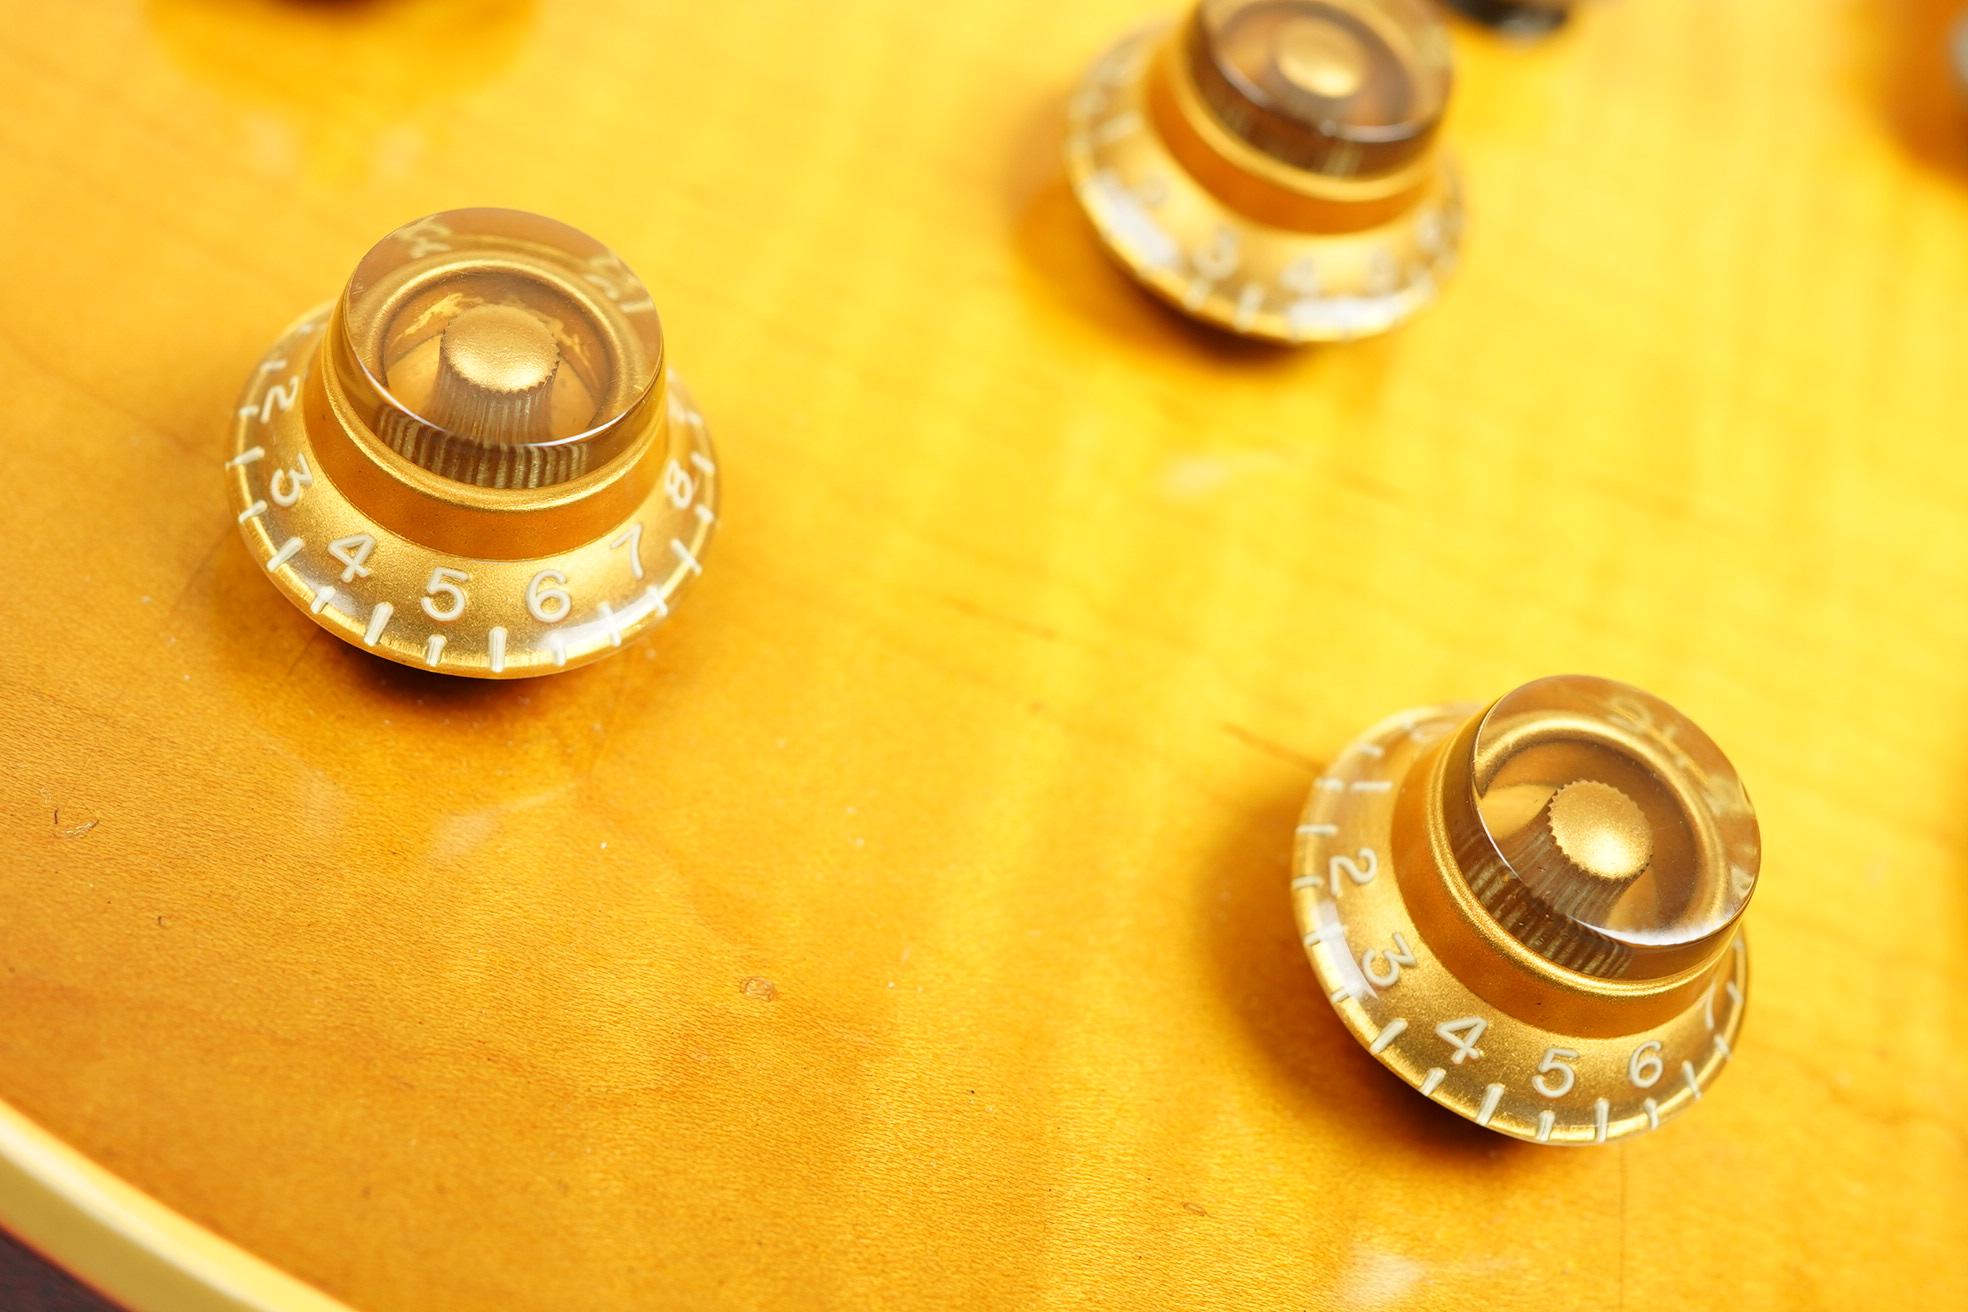 1960 Gibson Les Paul Burst 01602